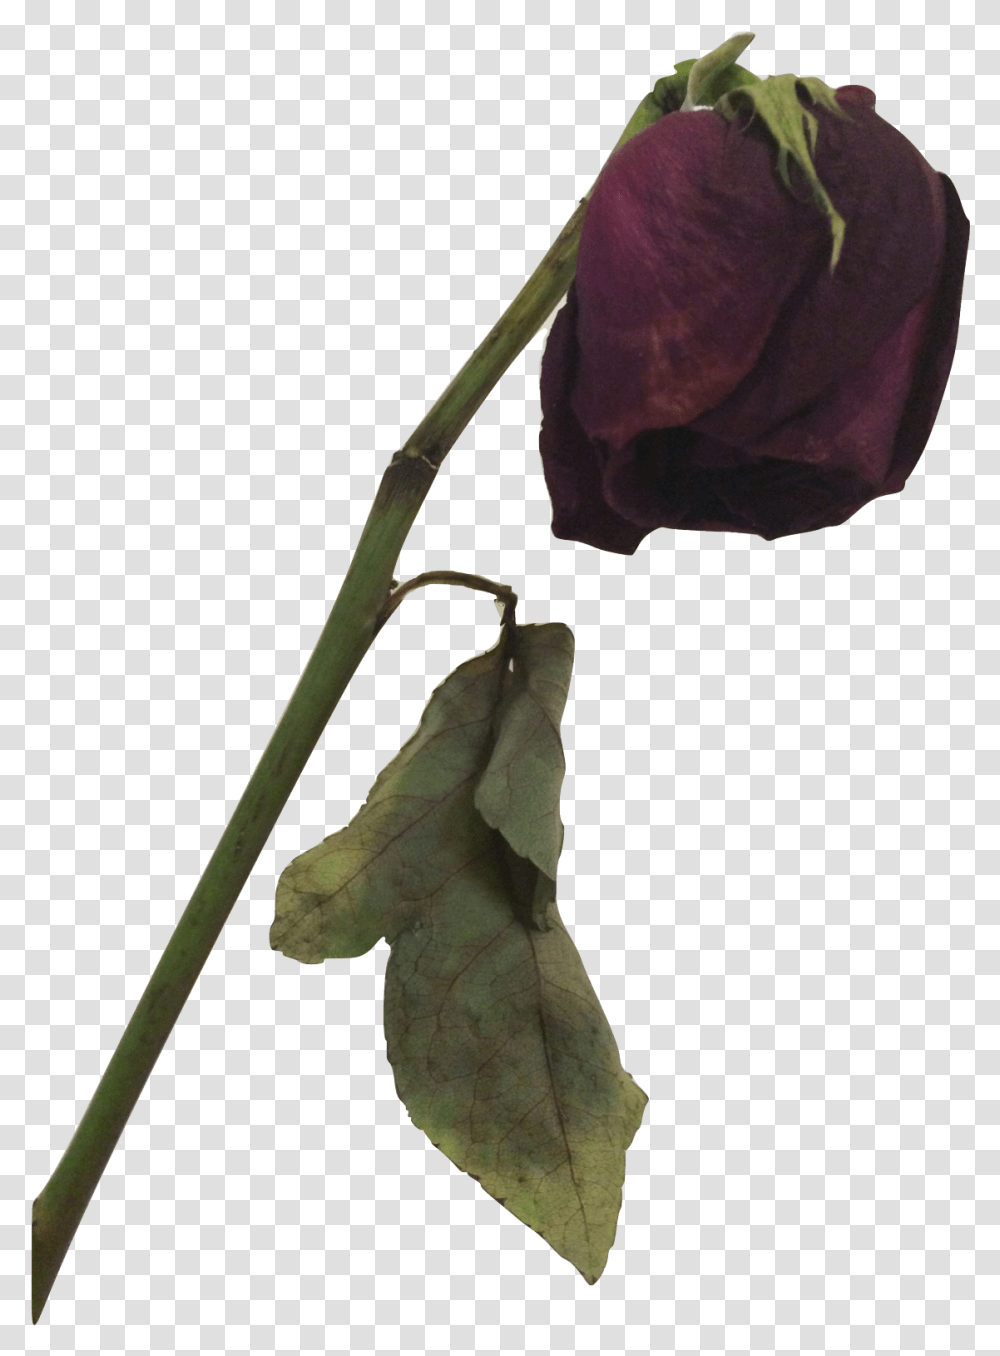 Dead Rose Dead Flower, Plant, Leaf, Tree, Petal Transparent Png